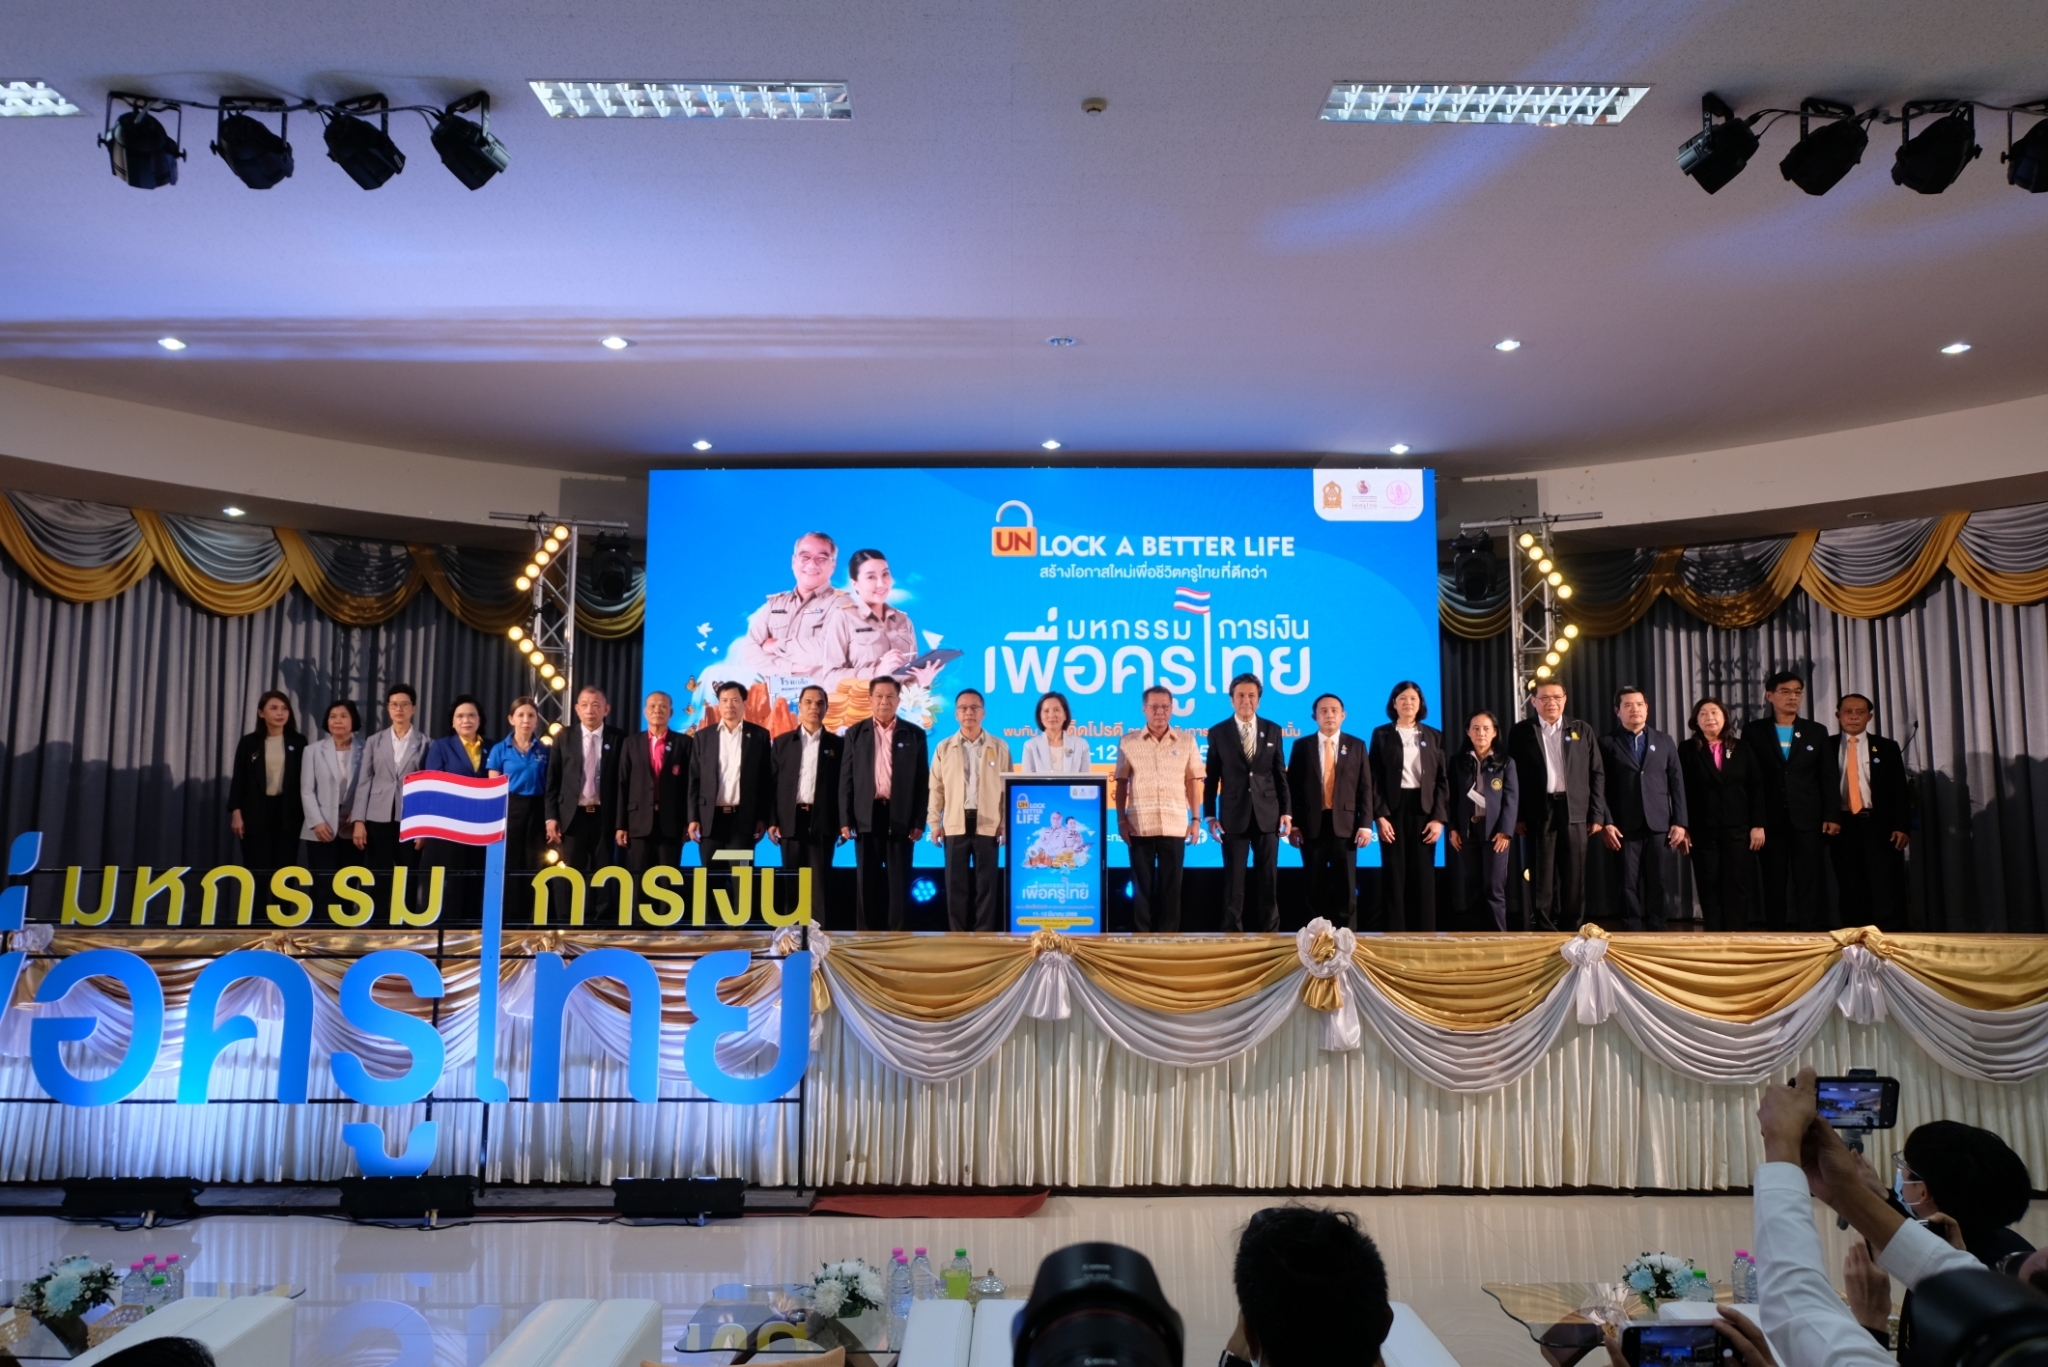 กยศ. เข้าร่วมพิธีเปิดงานมหกรรมการเงินเพื่อครูไทย 4 ภูมิภาค “Unlock a better life” สร้างโอกาสใหม่ เพื่อชีวิตครูไทยที่ดีกว่า  